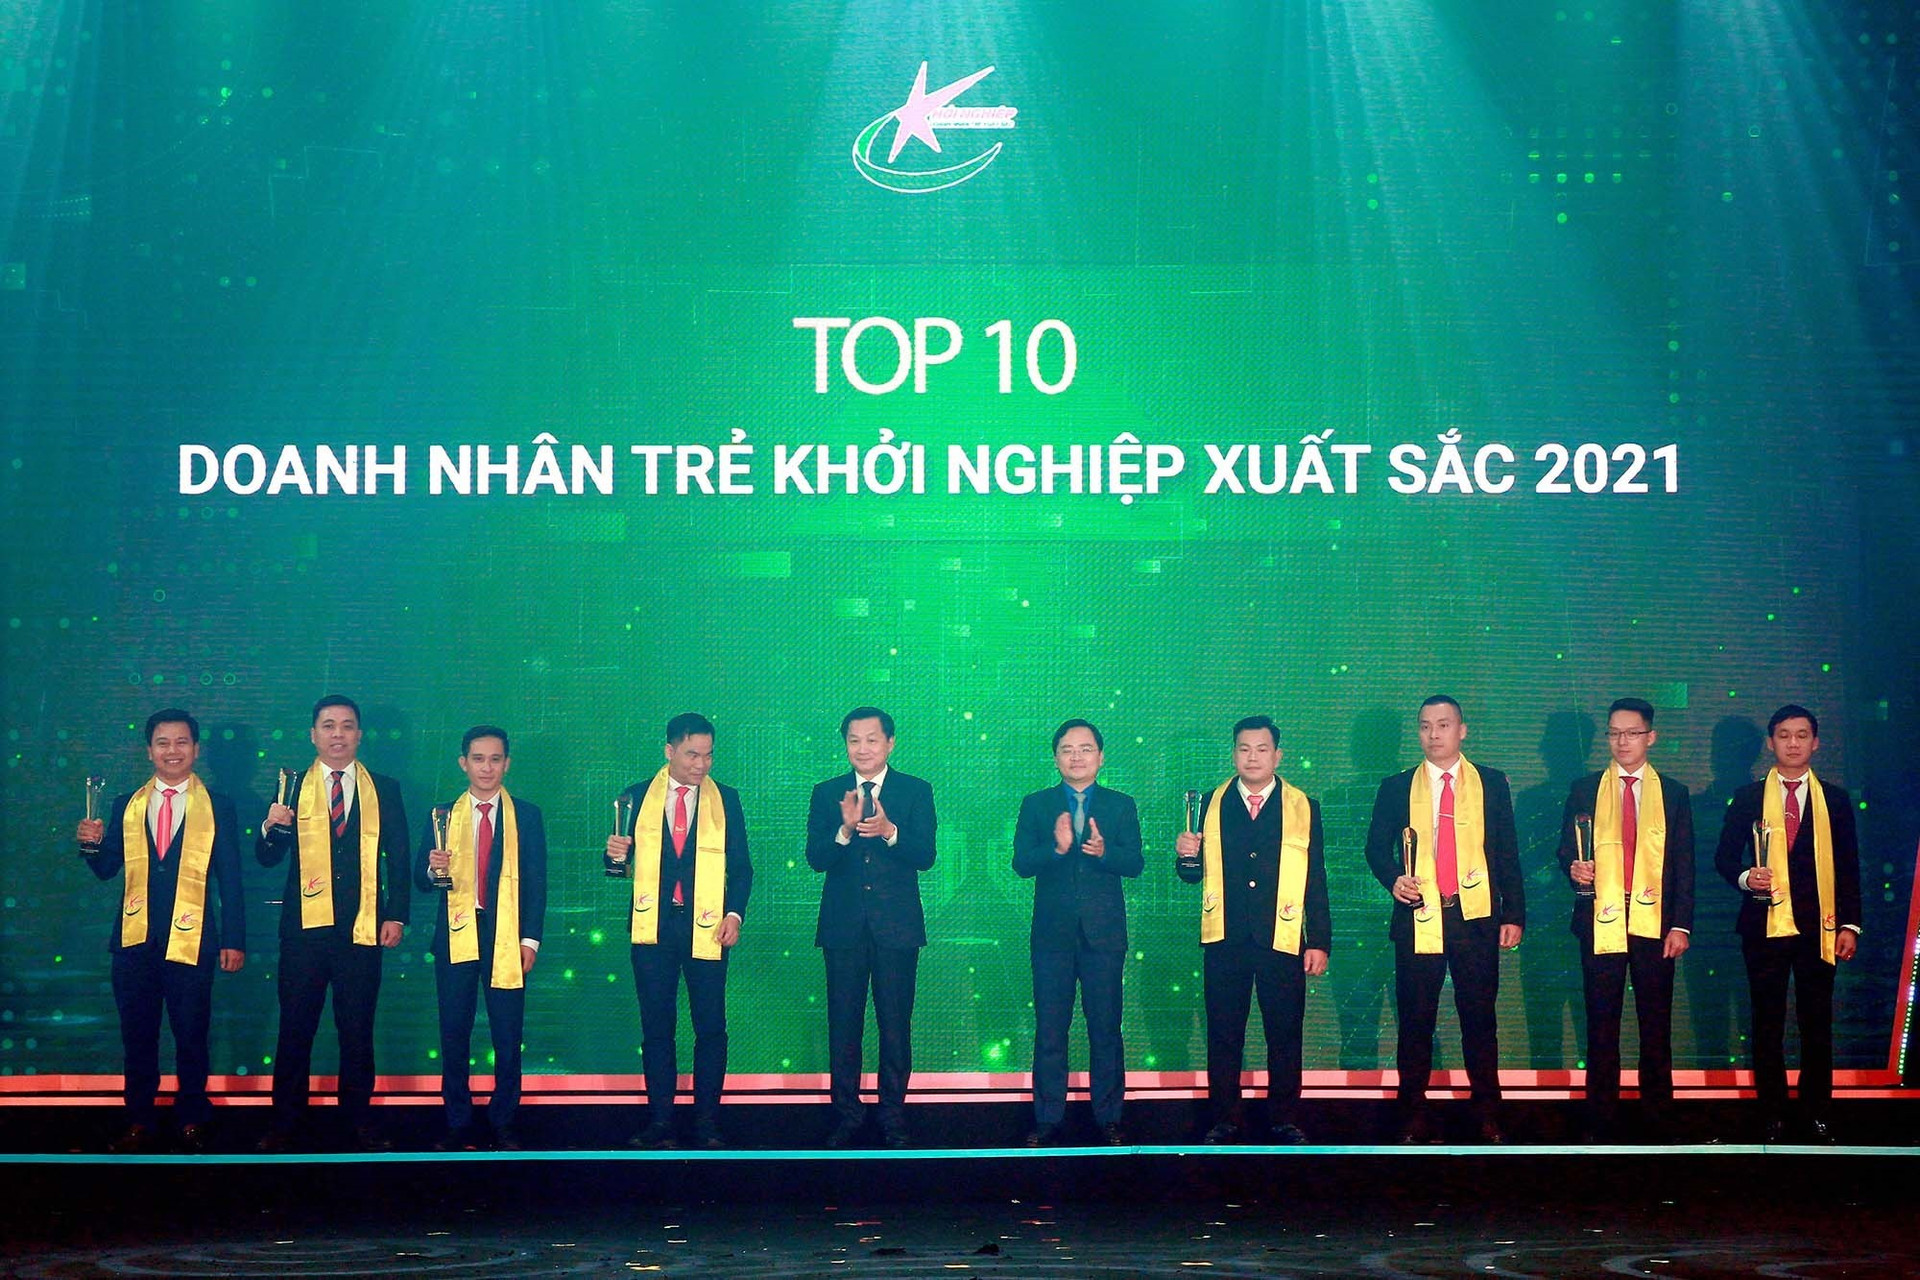 Anh Trần Hoàng Thái - Chủ tịch HĐQT kiêm Tổng Giám đốc Công ty CP Dewoo (ngoài cùng bên trái) nhận danh hiệu Doanh nhân trẻ khởi nghiệp xuất sắc 2021 (Top 10). Ảnh: BTC